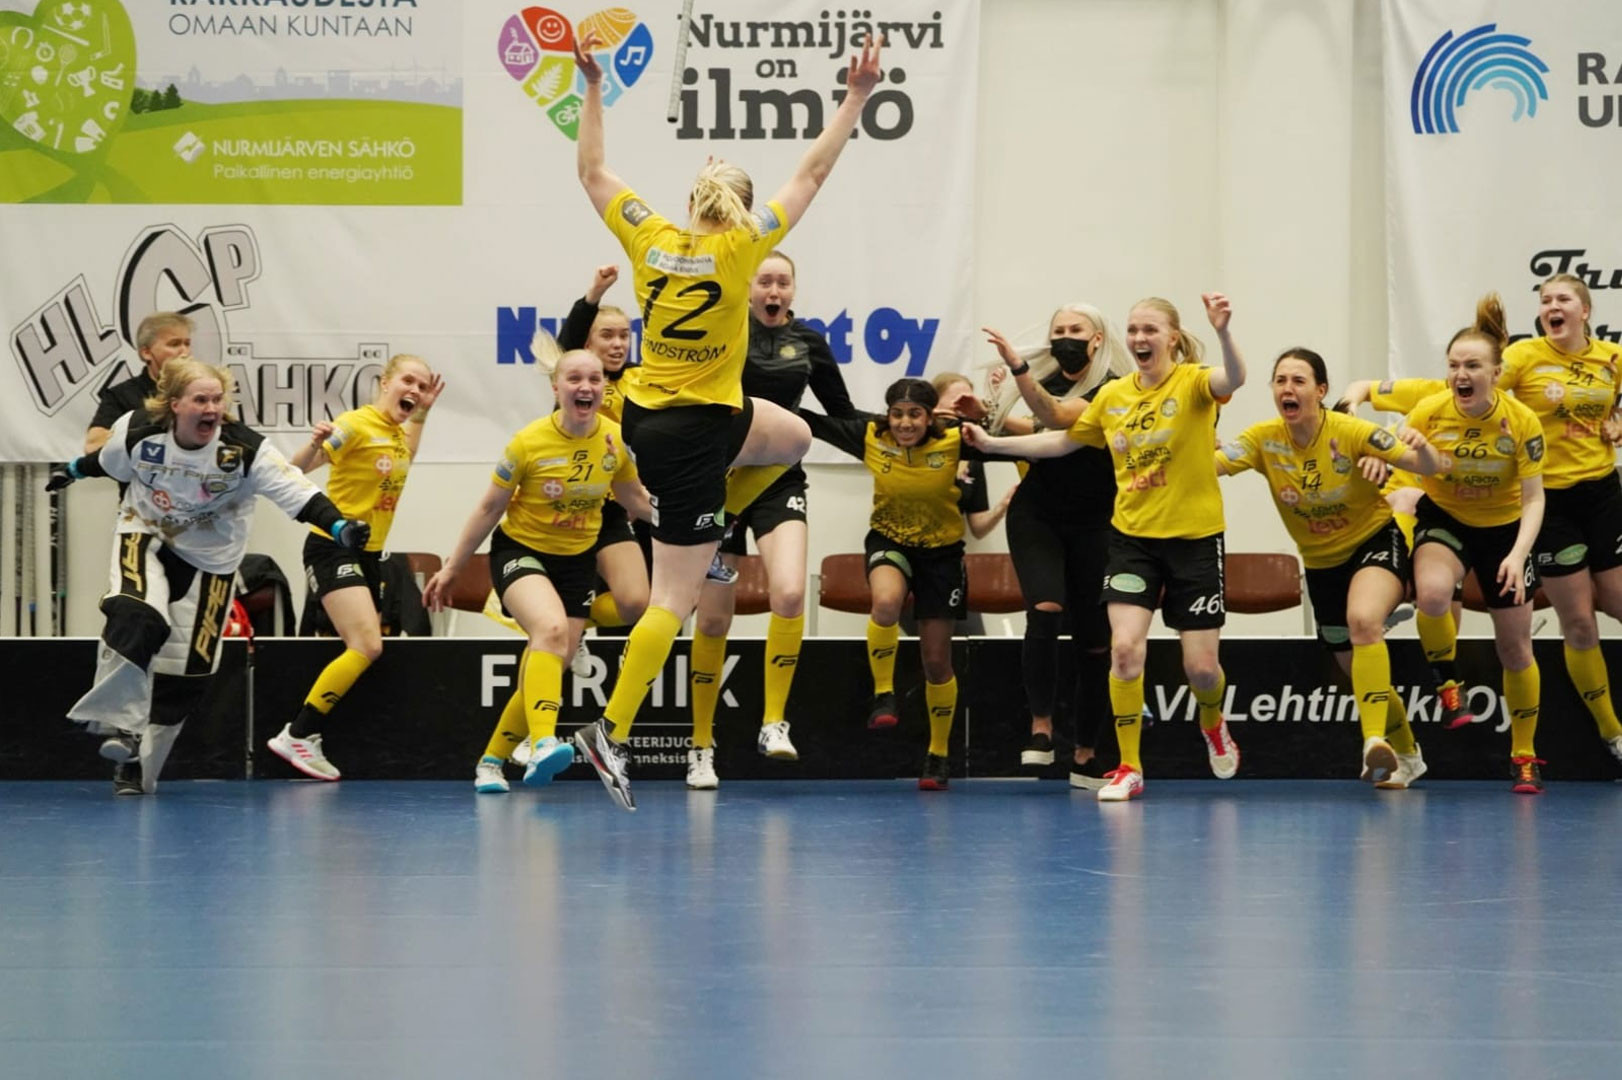 PSS freut sich über den gewonnenen finnischen Meistertitel in der F-Liiga